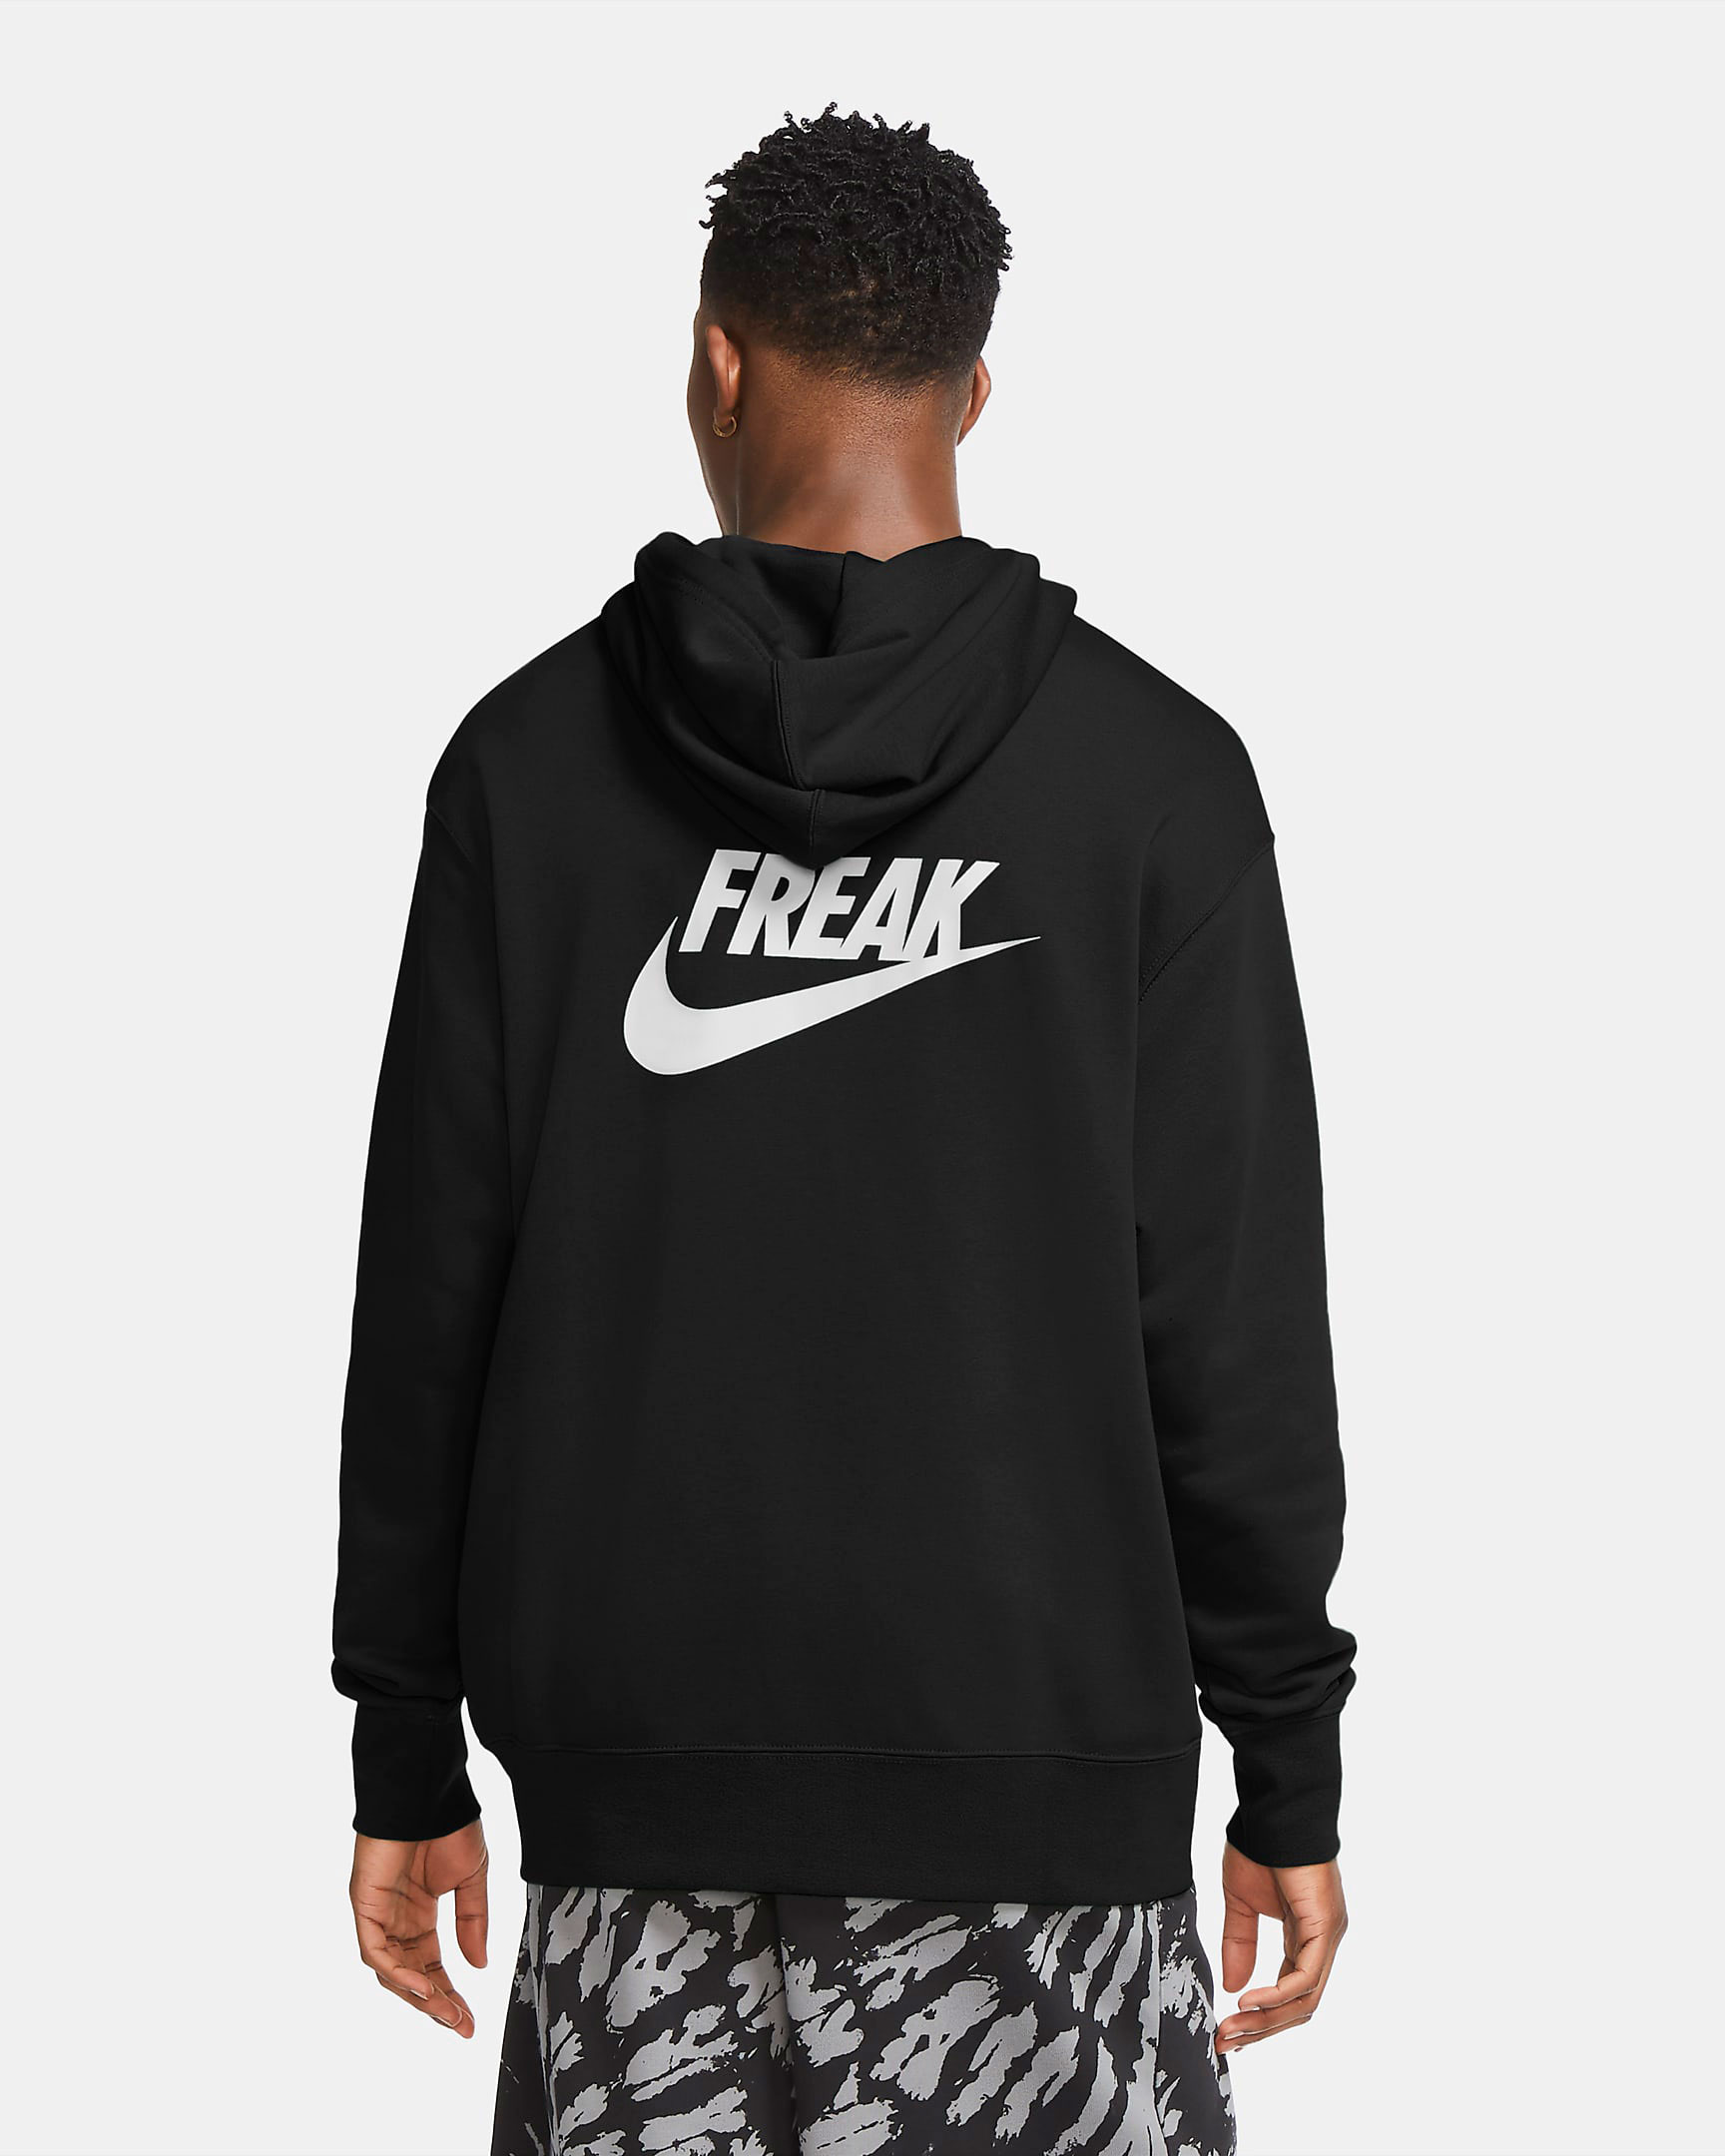 greek freak nike hoodie